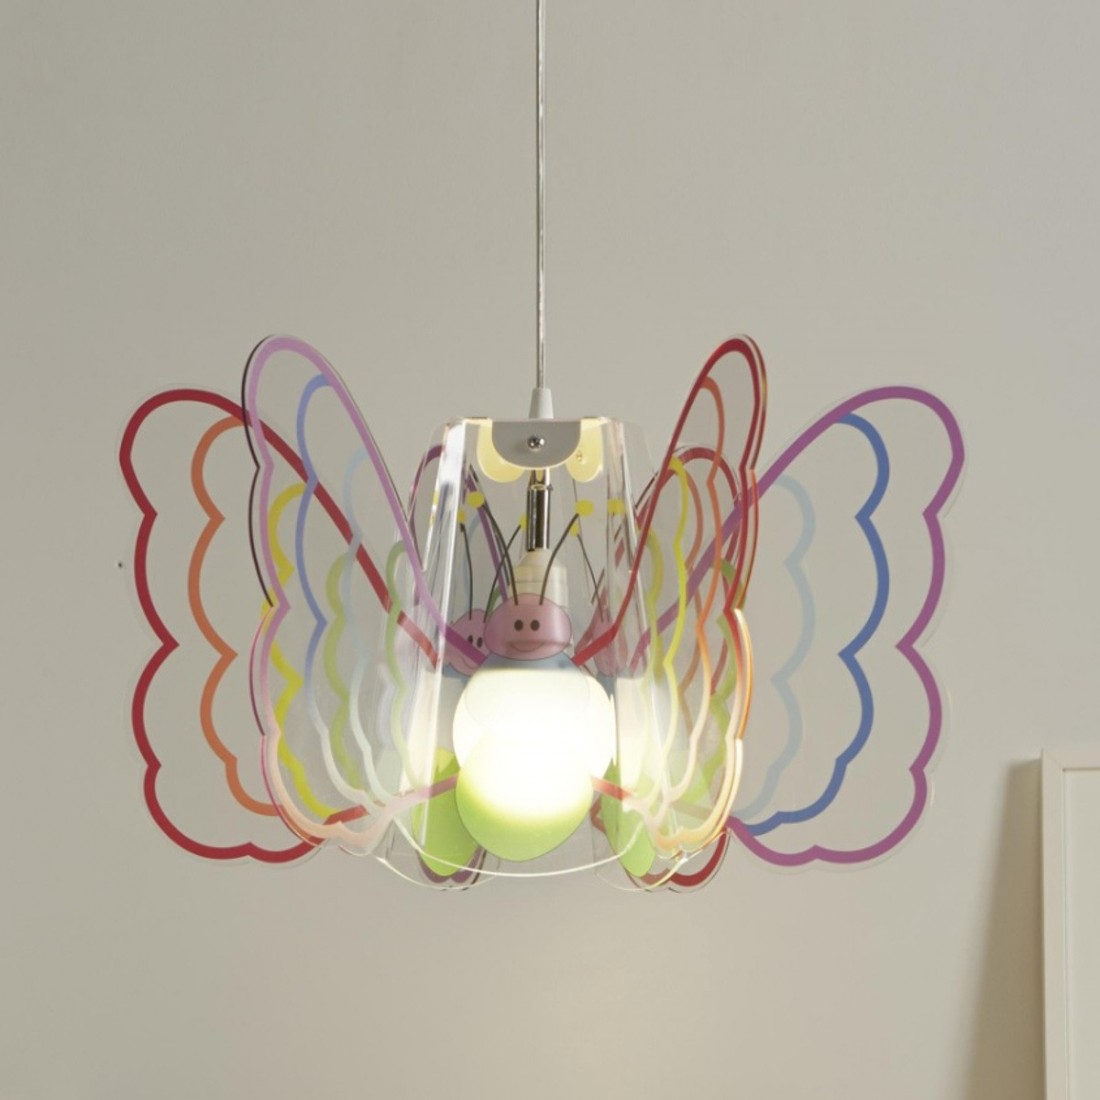 Suspension EM-BUTTERFLY CL1528 E27 LED lustre en méthacrylate multicolore papillon moderne chambres d'enfants